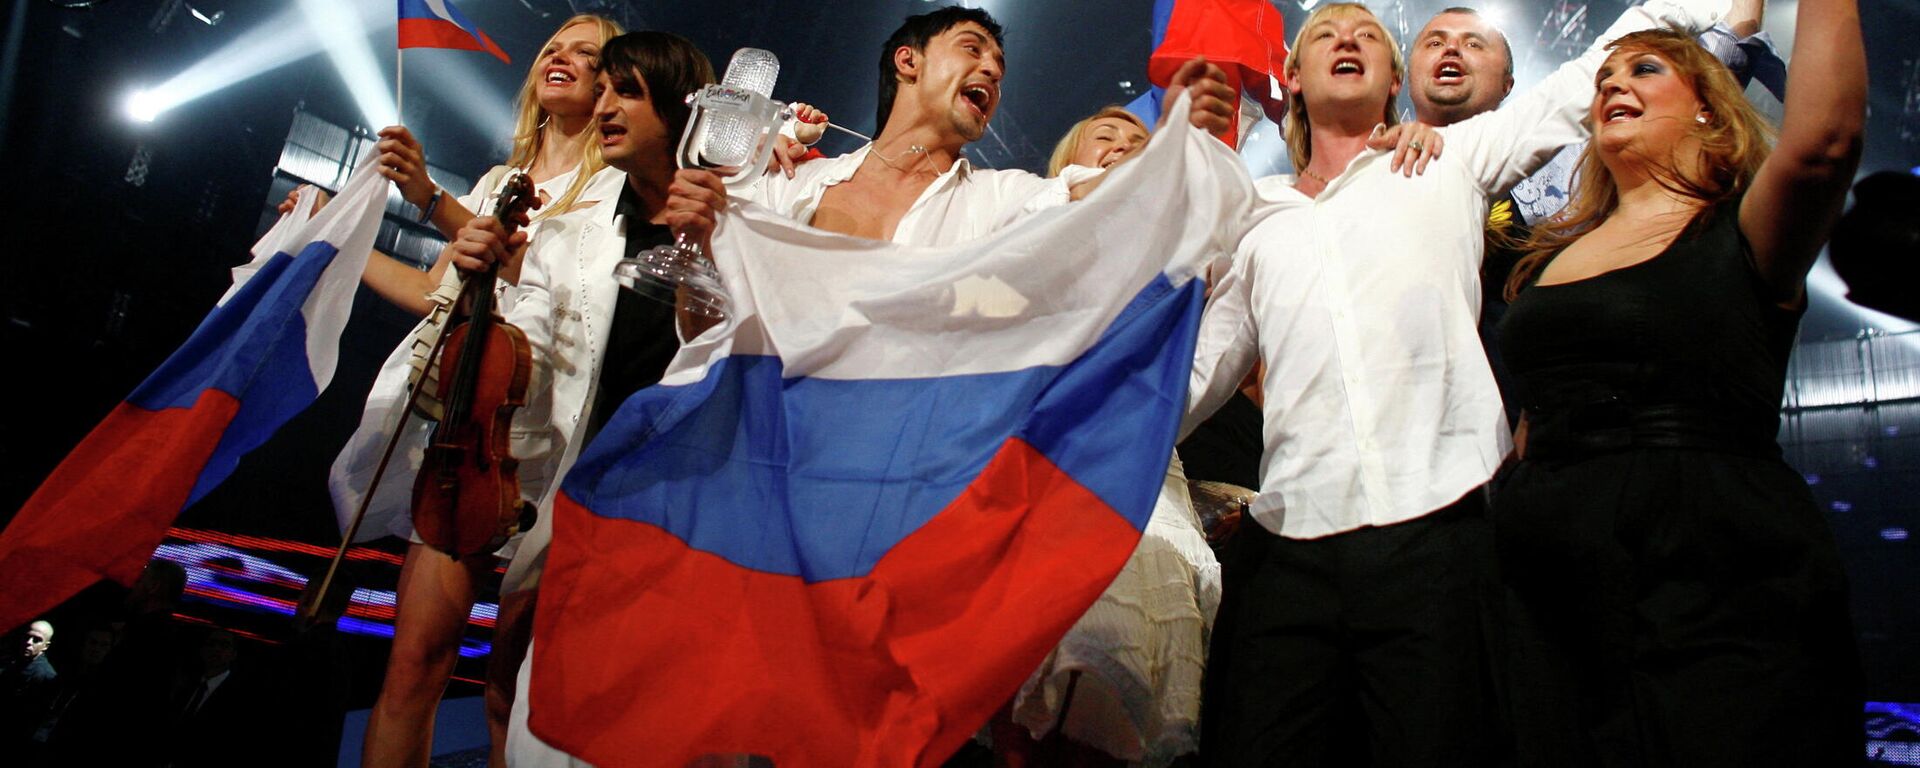 Dima Bilan de Rusia después de ganar el Festival de la Canción de Eurovisión en Belgrado el 24 de mayo de 2008 (archivo) - Sputnik Mundo, 1920, 25.02.2022